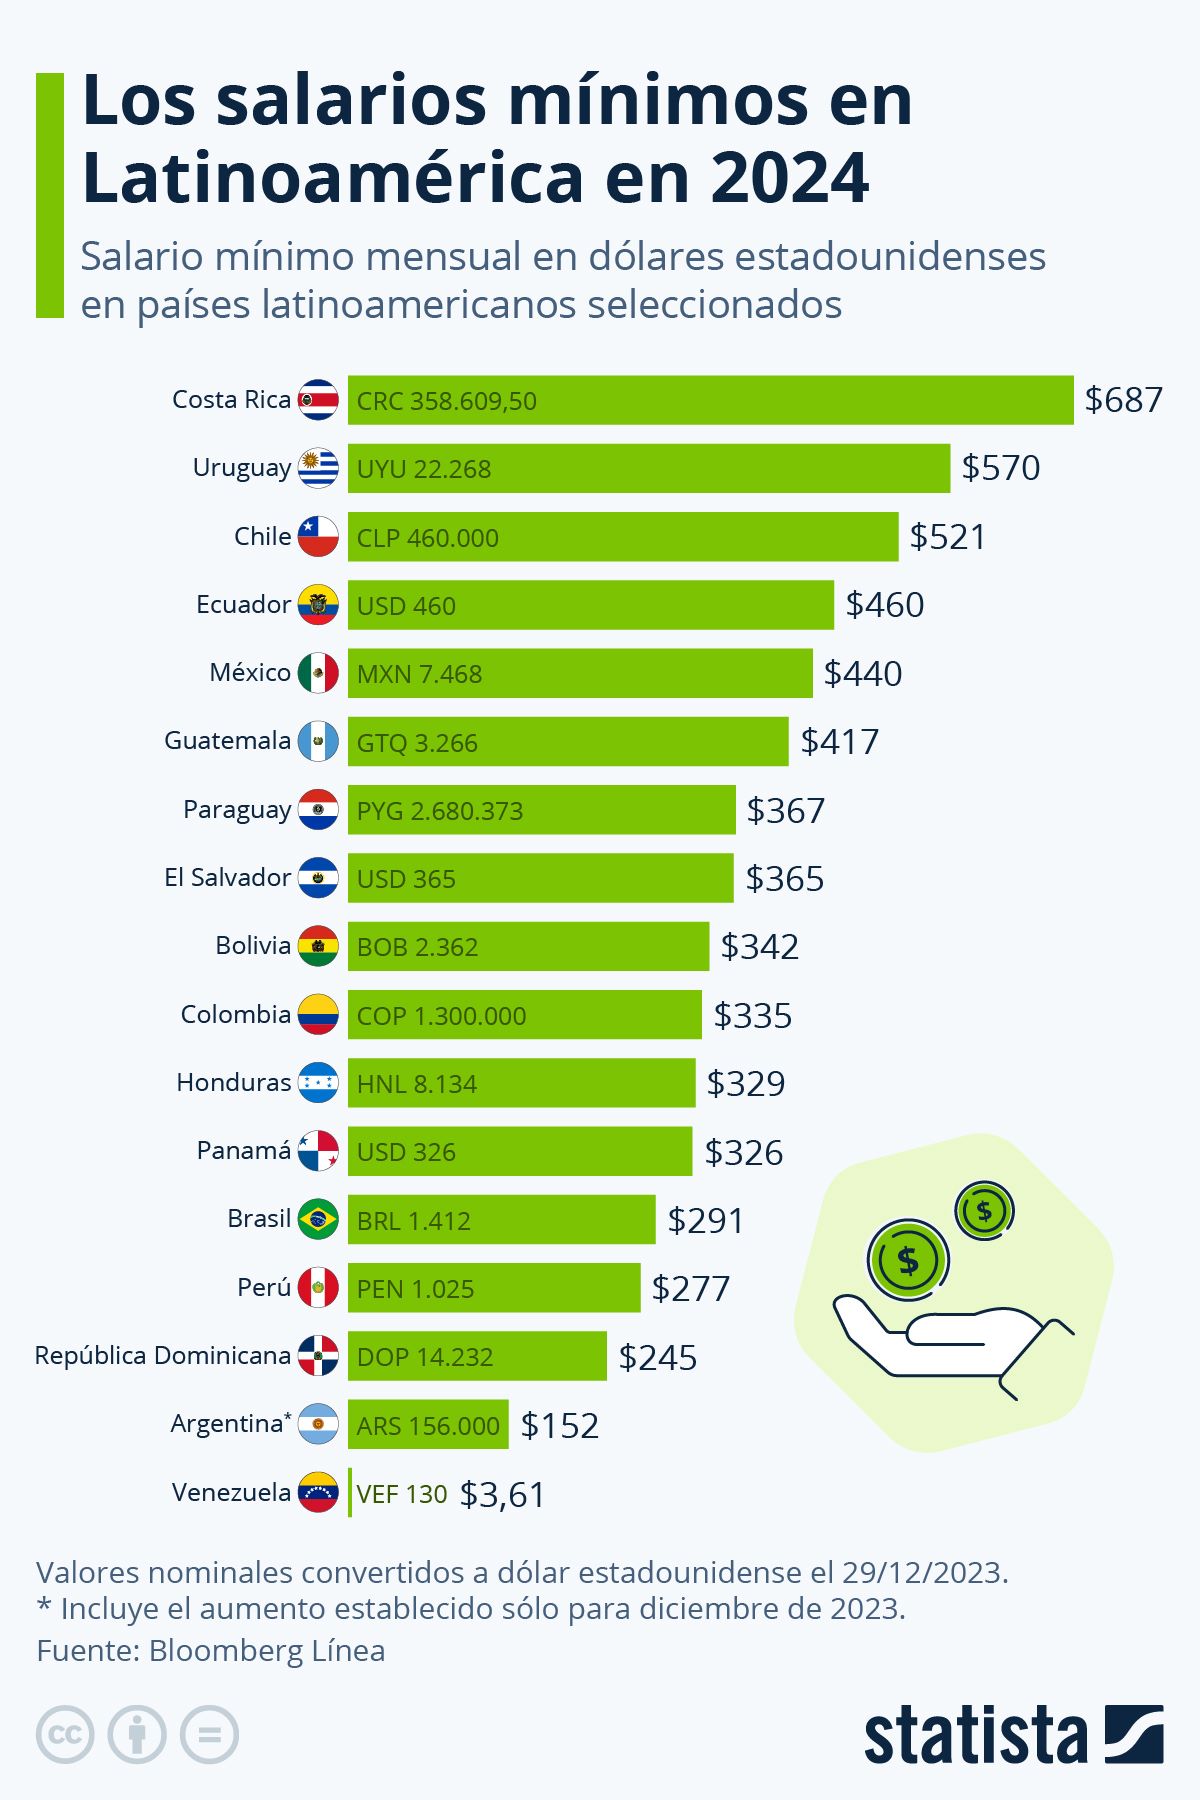 #Ranking Salario mínimo en Venezuela es 18.983% inferior al de Costa Rica